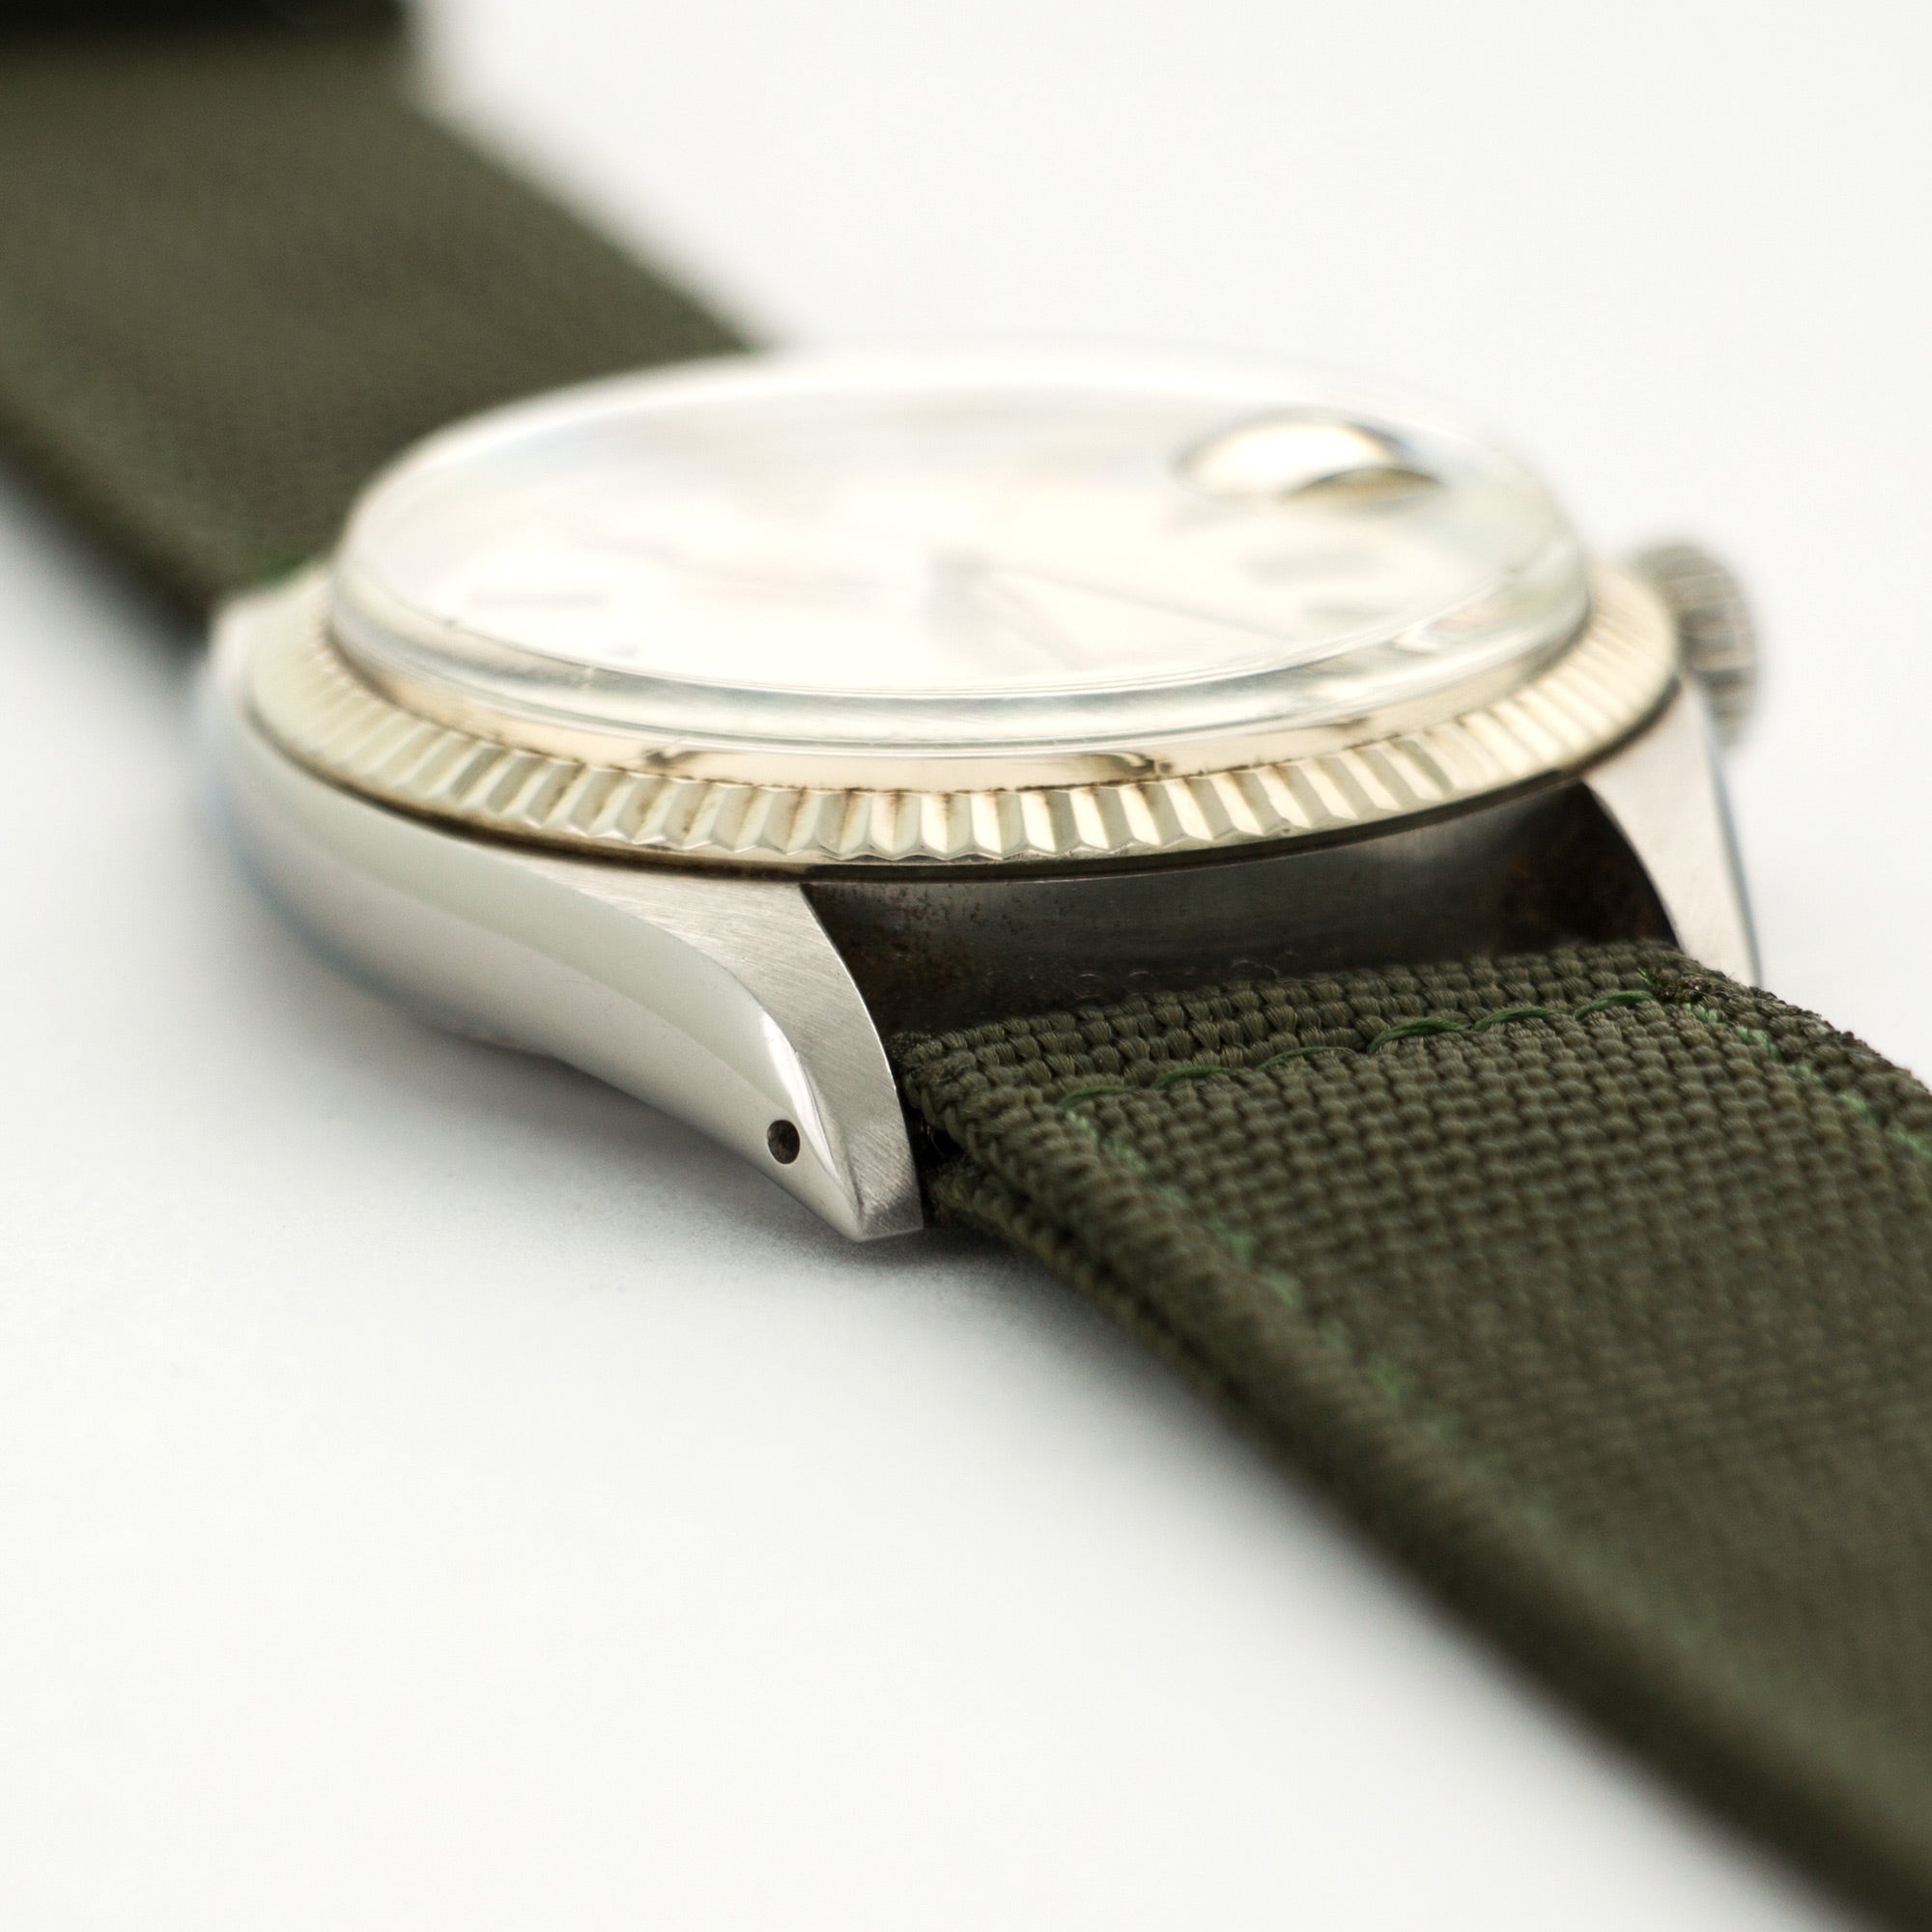 Rolex - Rolex Stainless Steel Datejust Watch Ref. 1601 - The Keystone Watches